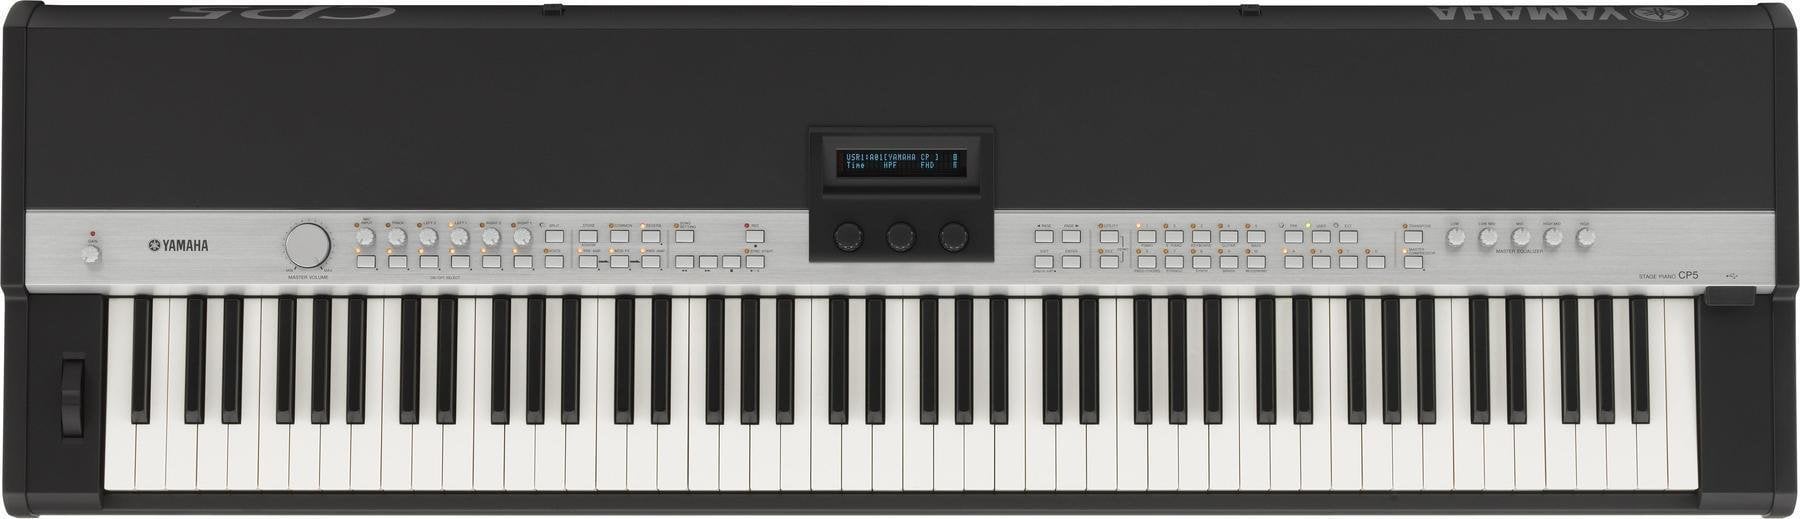 Piano de escenario digital Yamaha CP 5